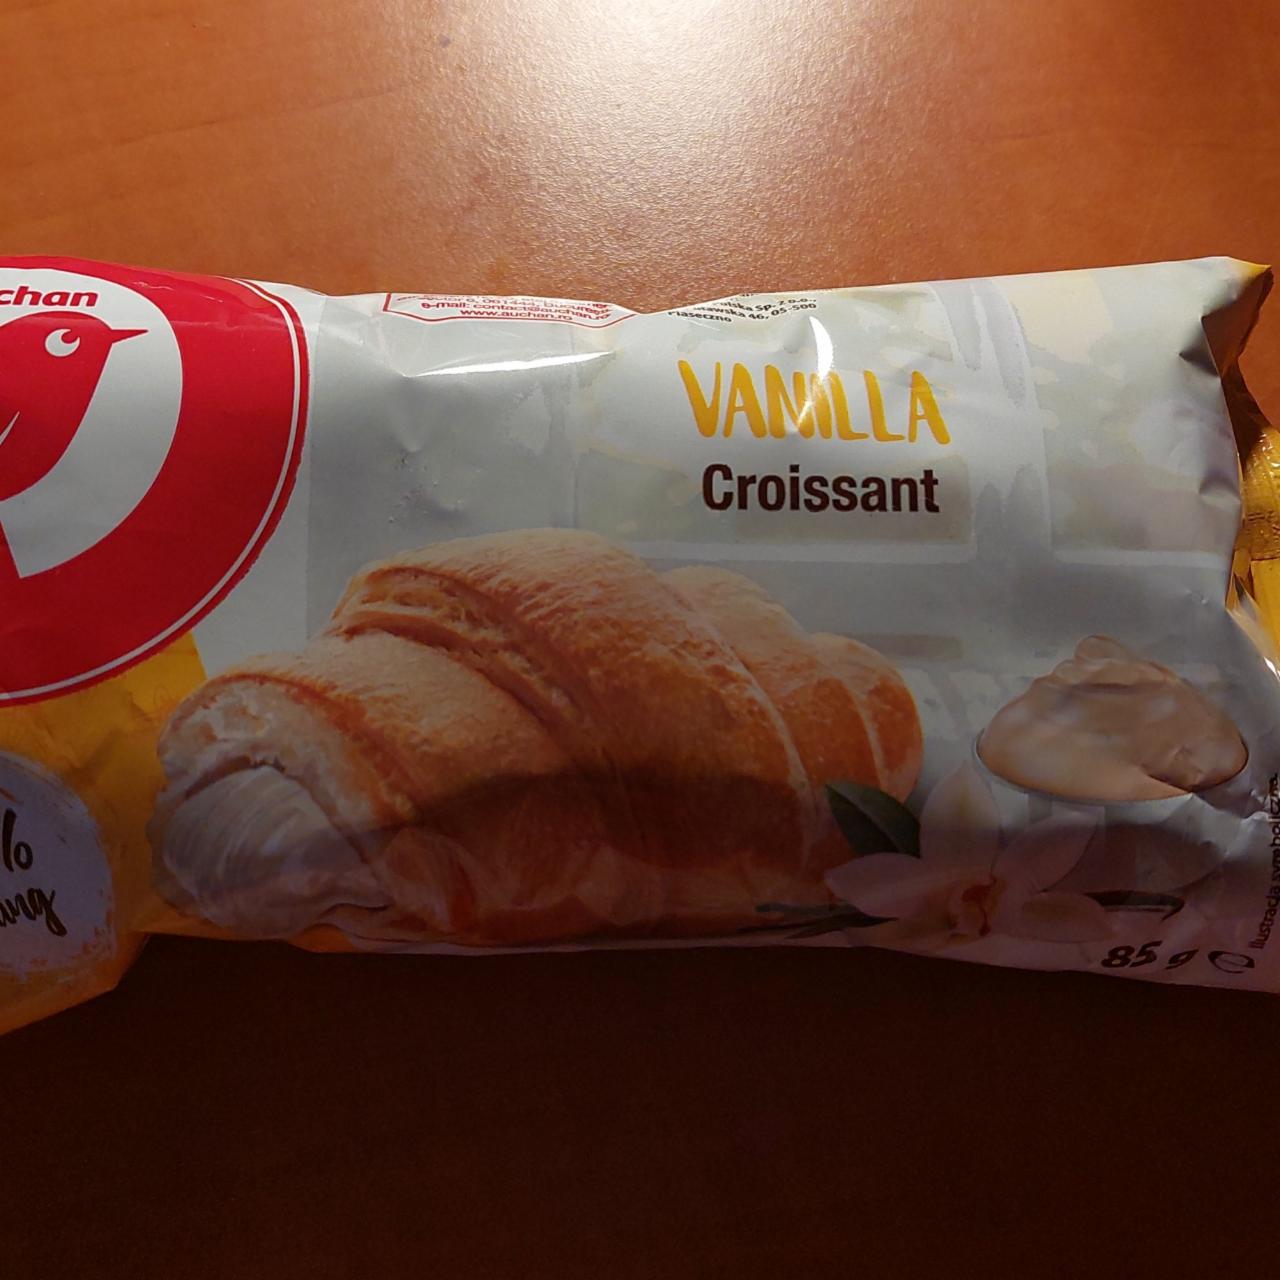 Фото - Croissant duo vanilla Auchan